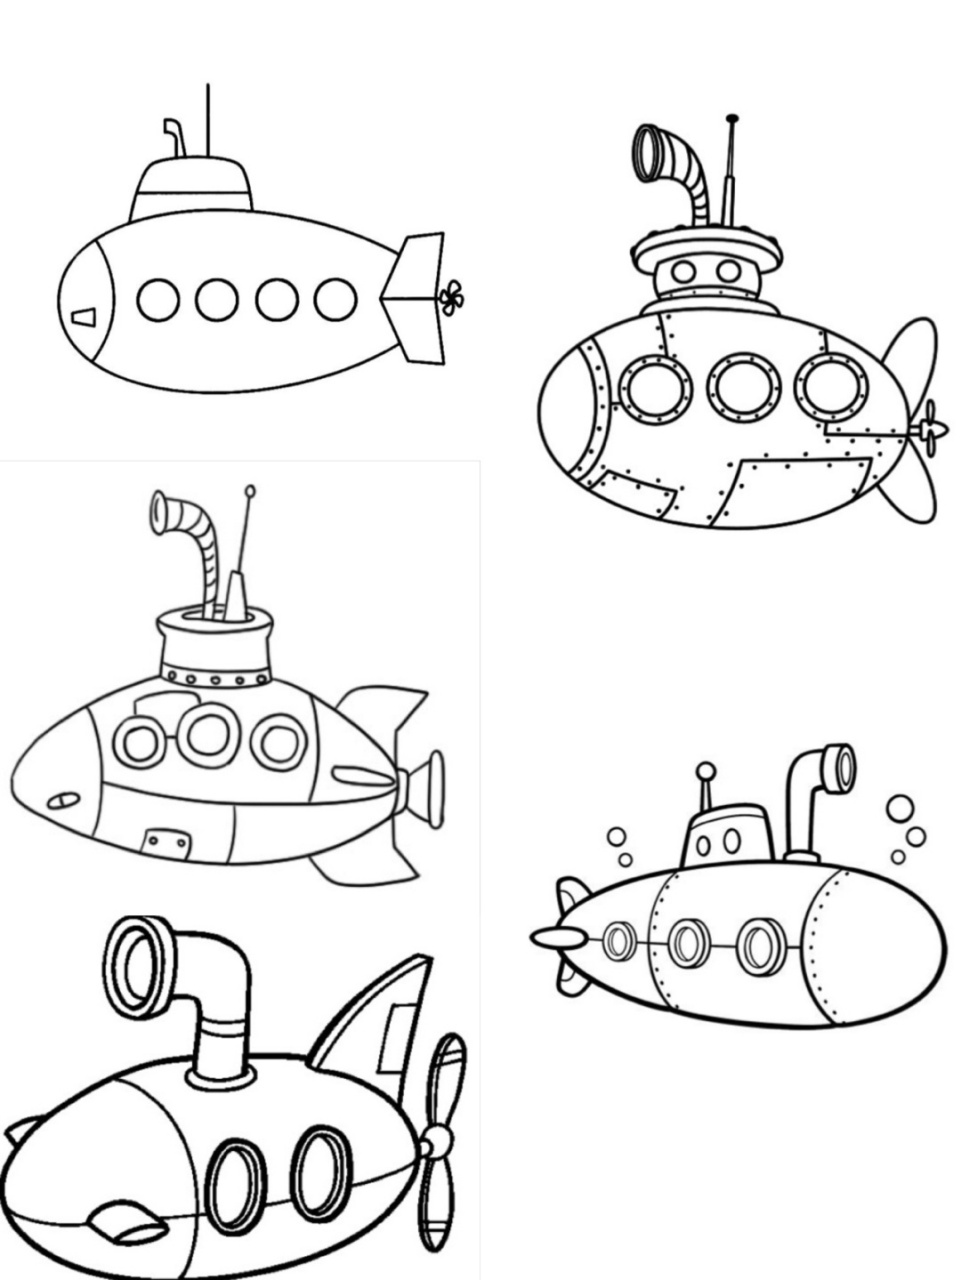 载人潜水艇简笔画图片